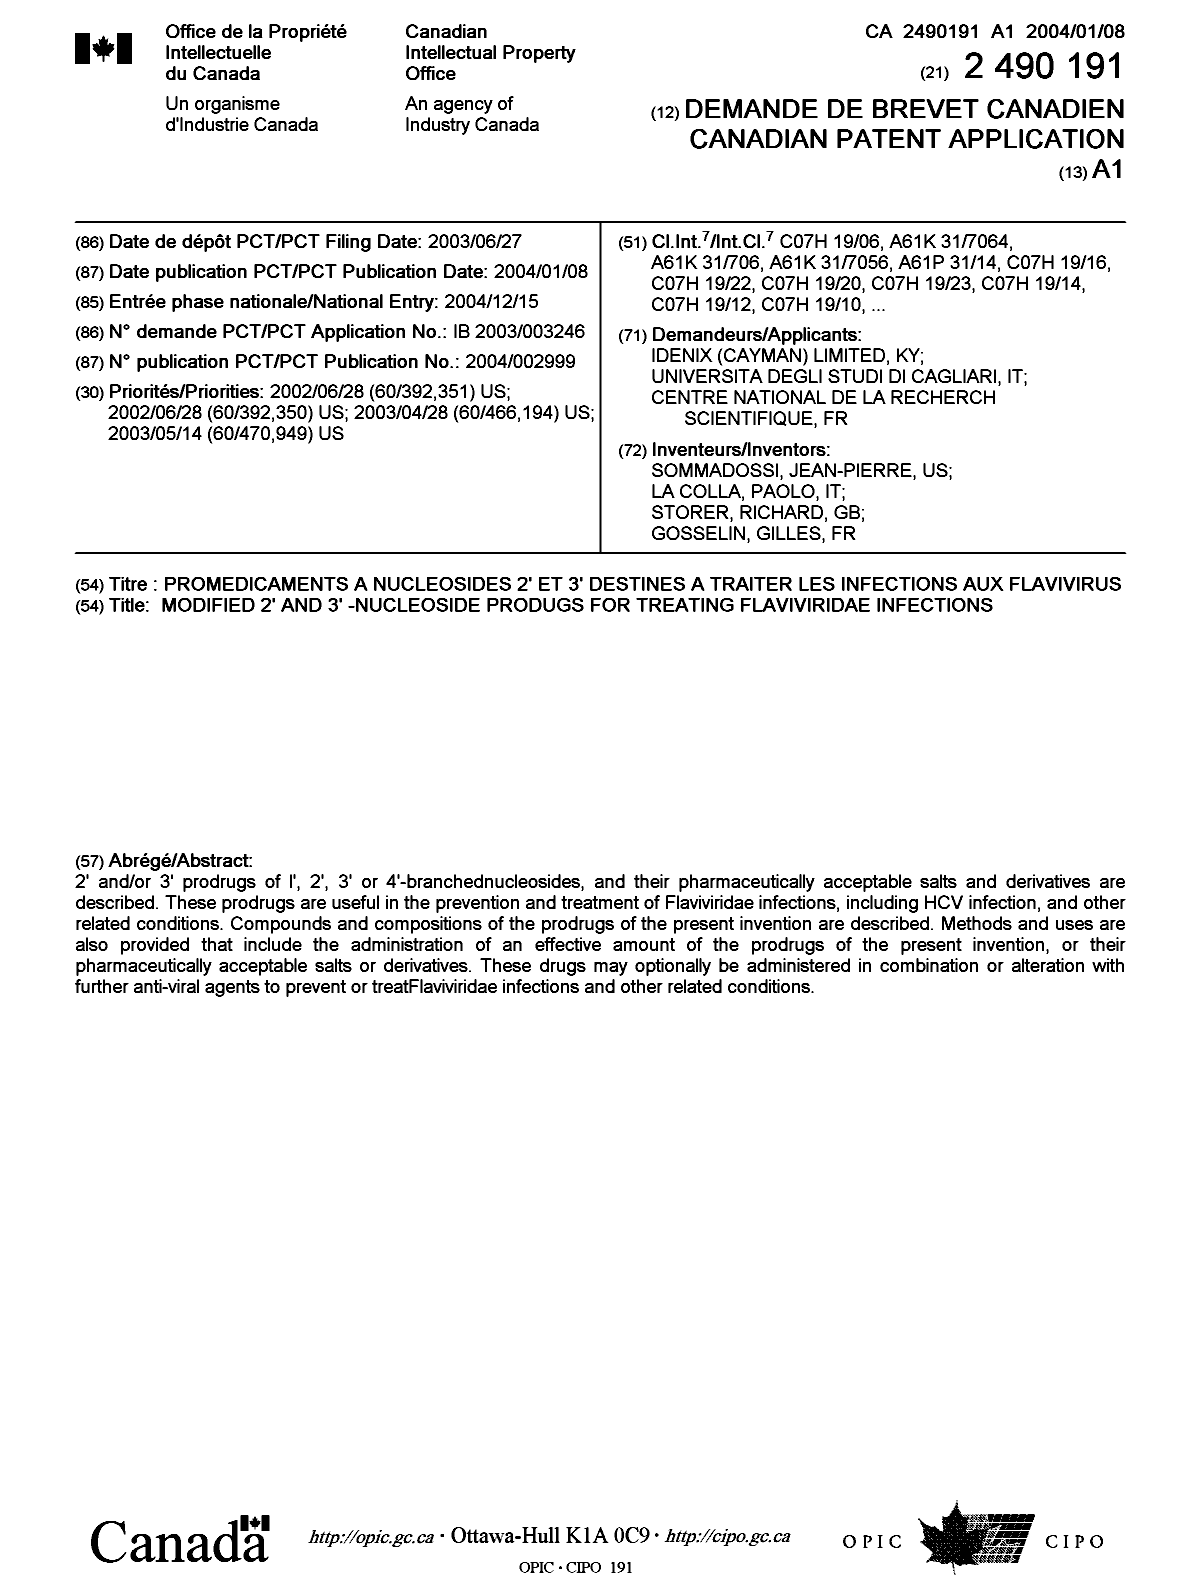 Document de brevet canadien 2490191. Page couverture 20050408. Image 1 de 2